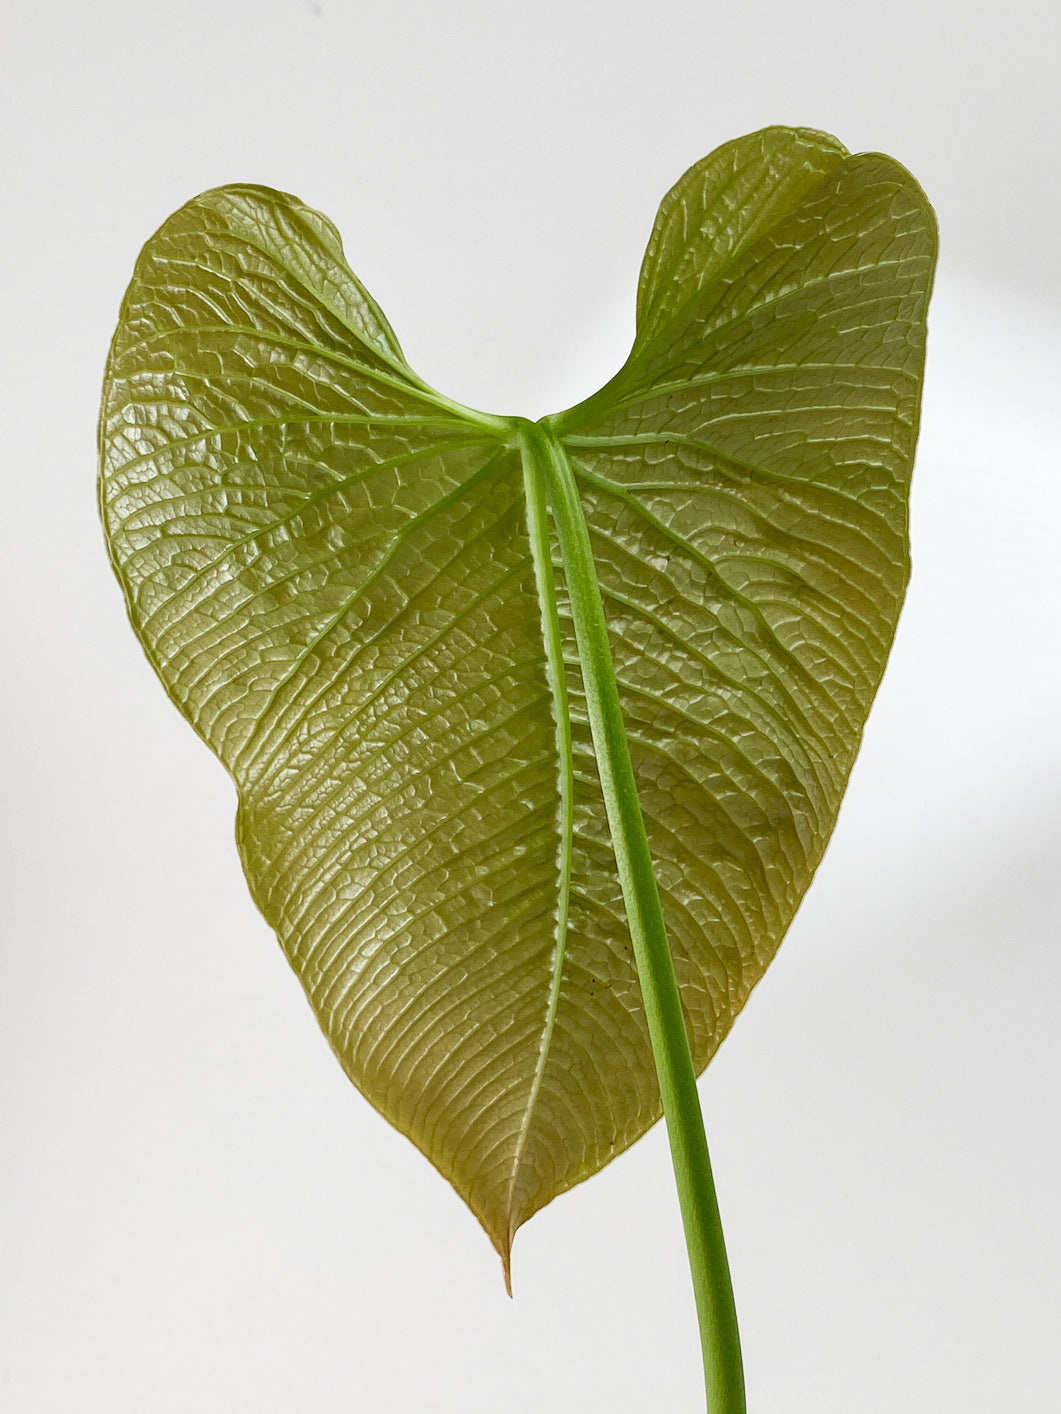 Anthurium Rugulosum "Quilted heart"